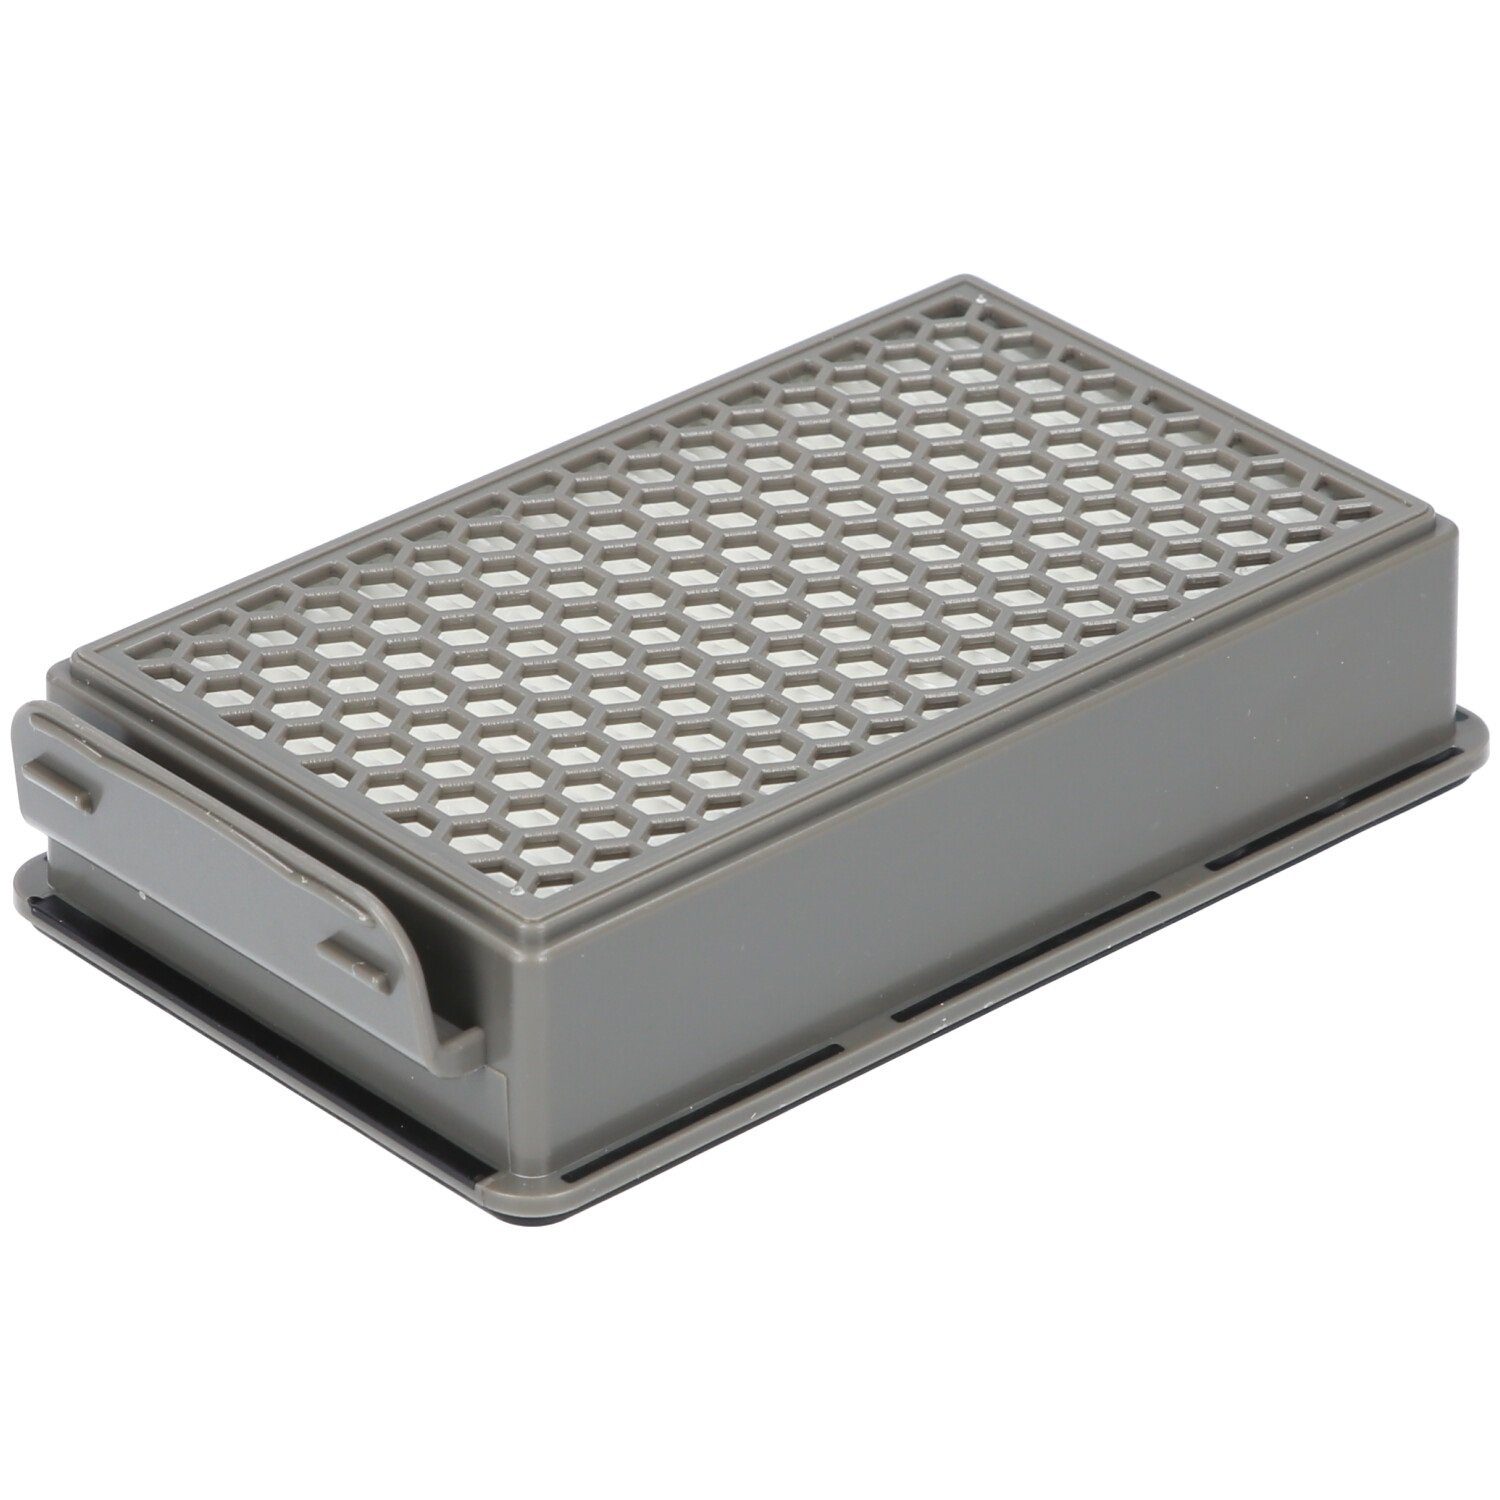 McFilter Filter-Set geeignet für Alternative für Rundfilter, Samurai 2x Staubsauger, SG3751WA Filterkassette, 2x ZR005901